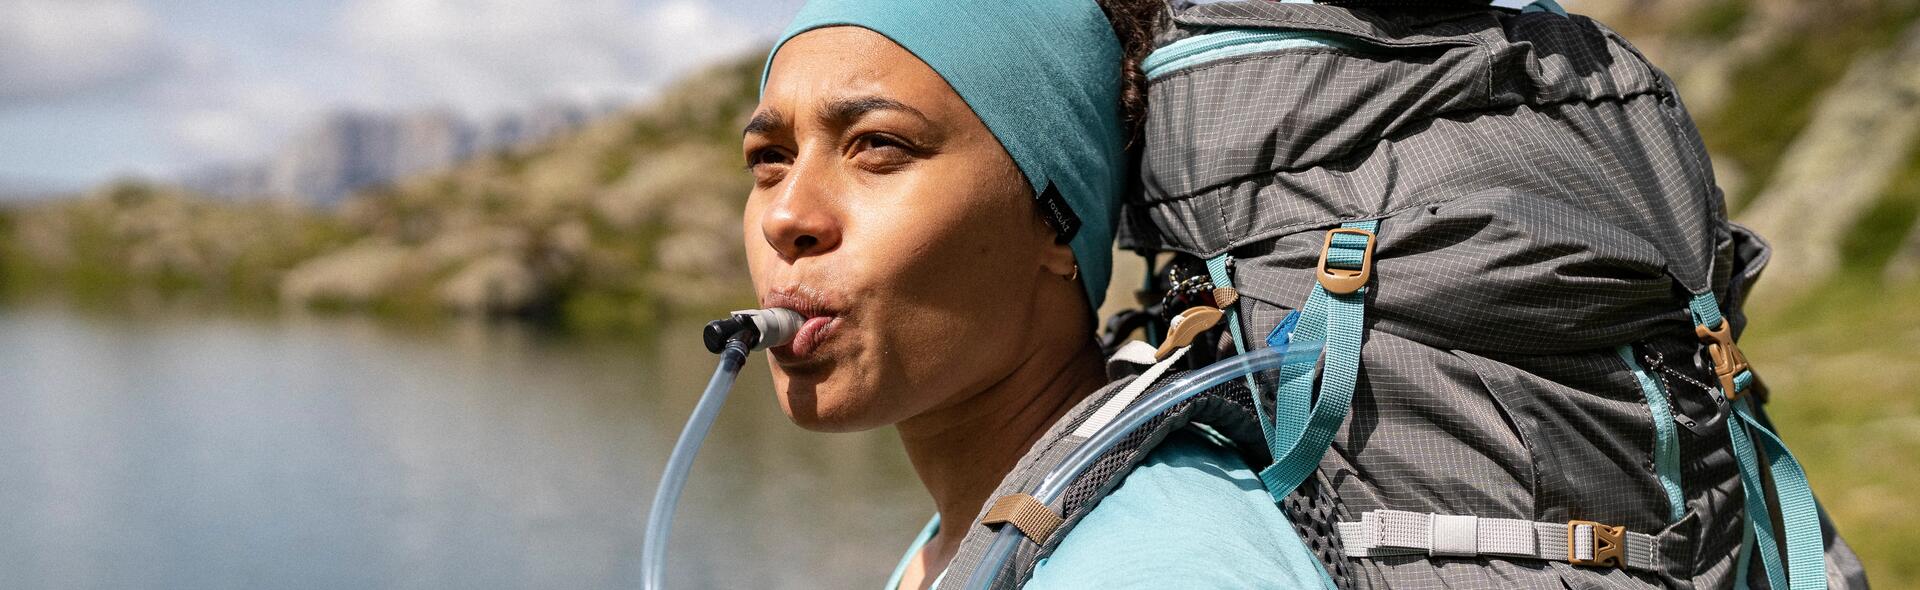 kobieta pijąca wodę z bukłaka schowanego w plecaku turystycznym